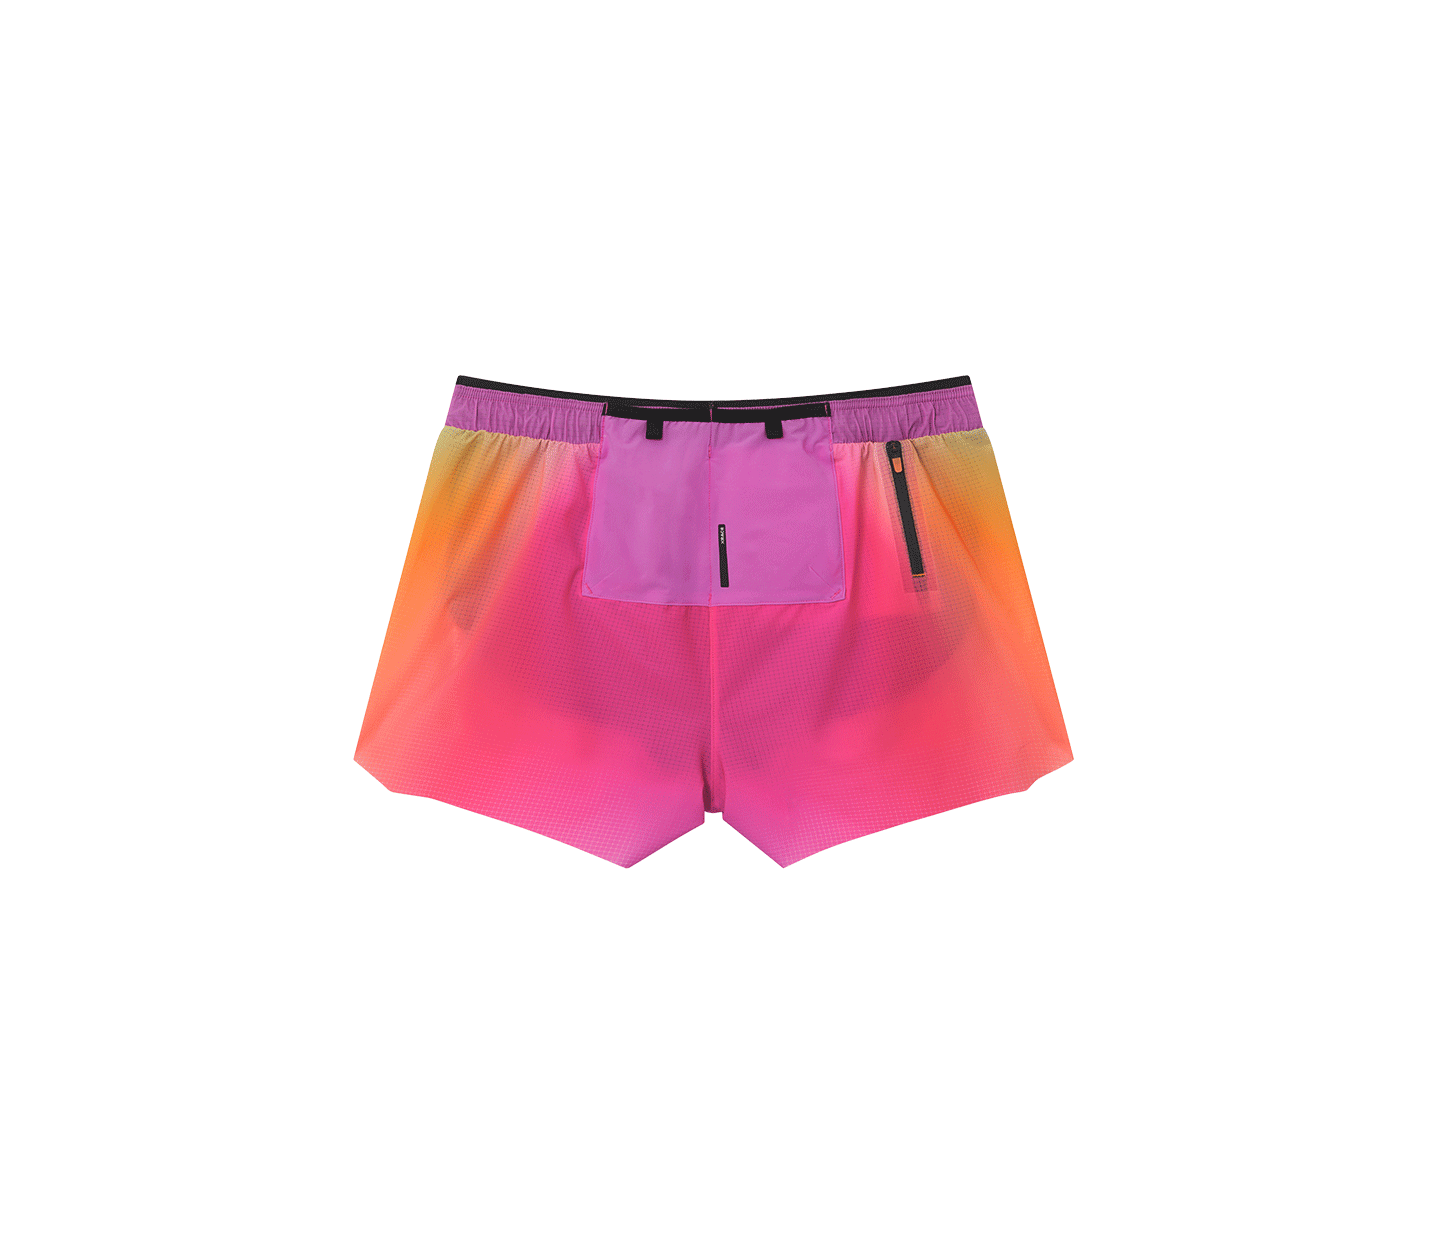 馬拉松短褲 |彩虹